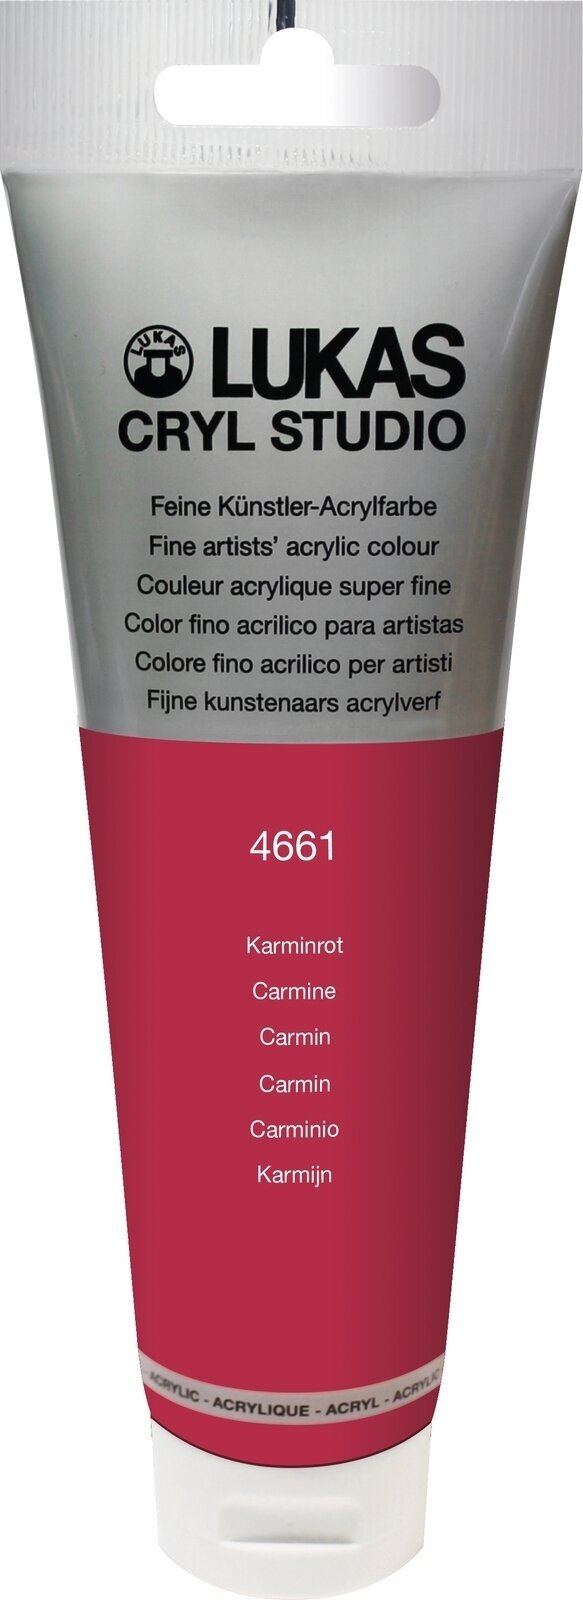 Akrylová farba Lukas Cryl Studio Acrylic Paint Plastic Tube Akrylová farba Carmine 125 ml 1 ks